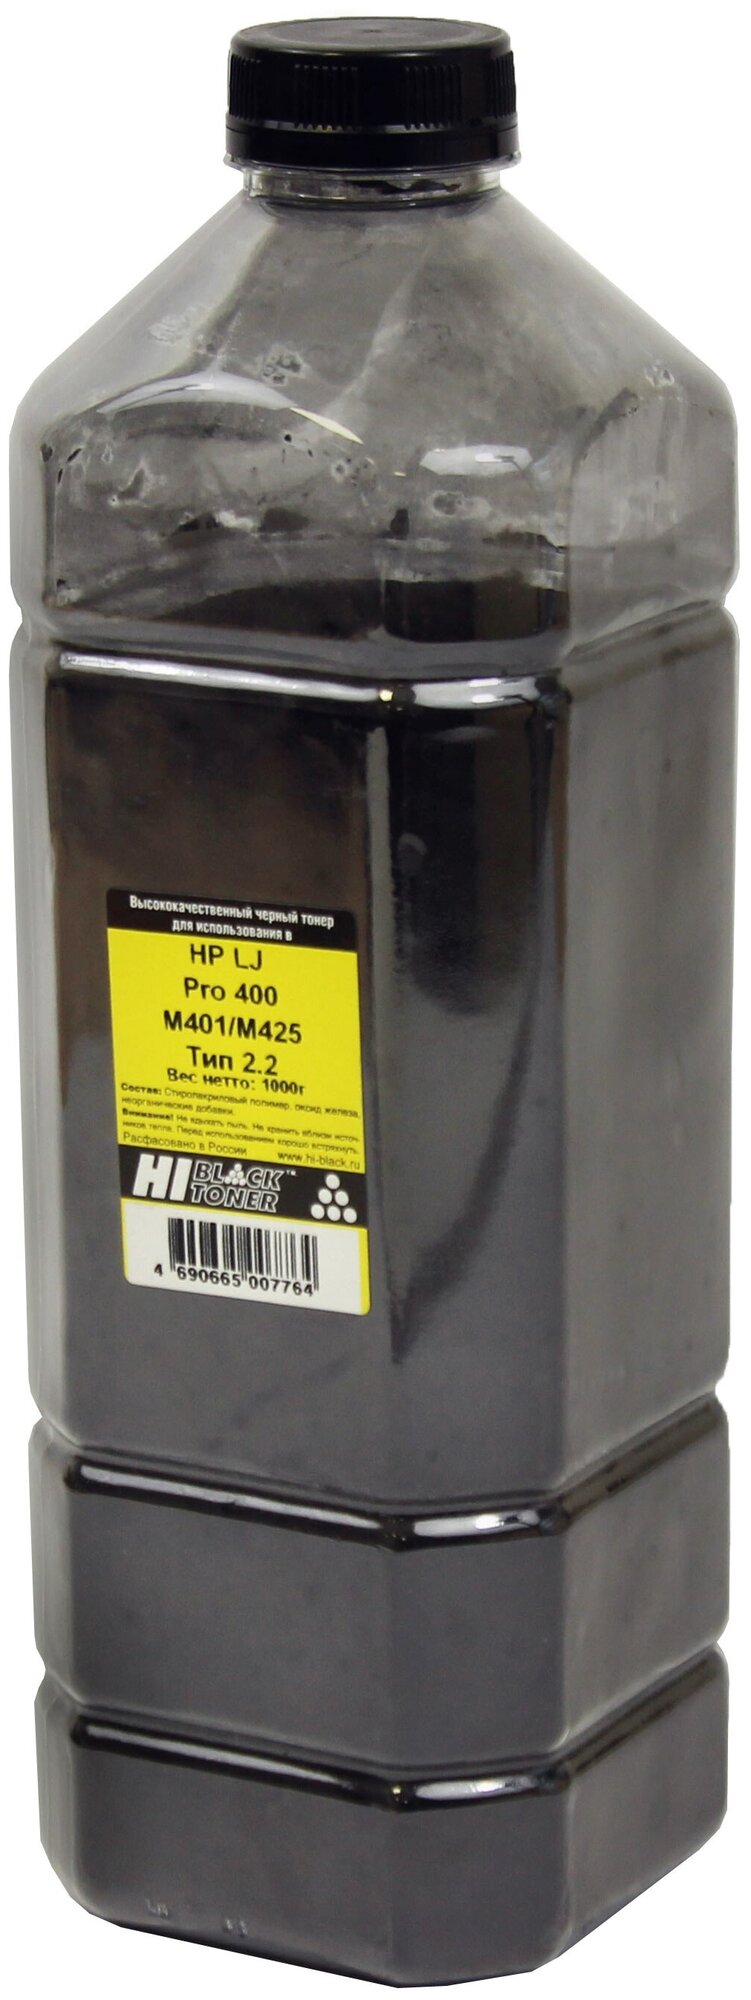 Тонер Hi-Black для HP LJ Pro 400 M401/M425, Тип 2.2, Bk, 1 кг, канистра, черный